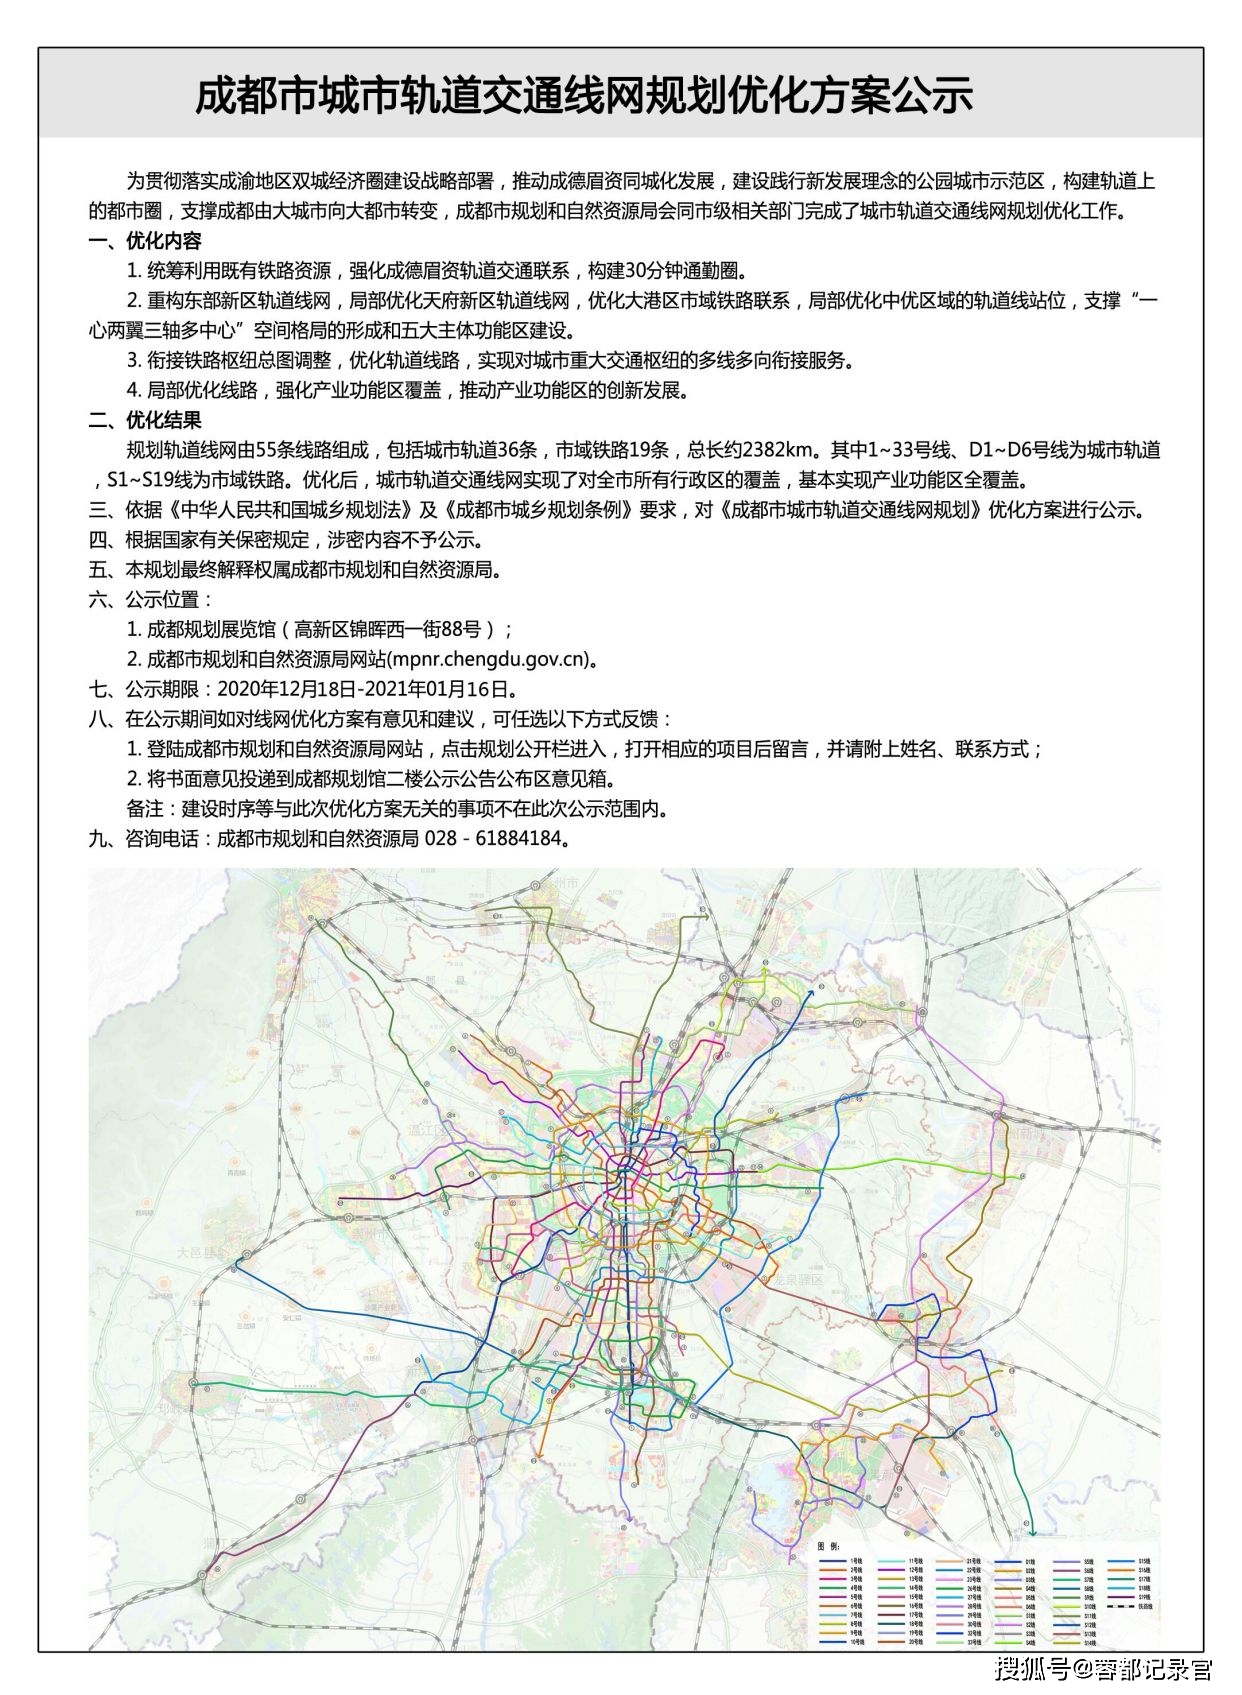 青白江交通运输局刚刚发布青白江所有轨道交通进展,快来看看时间